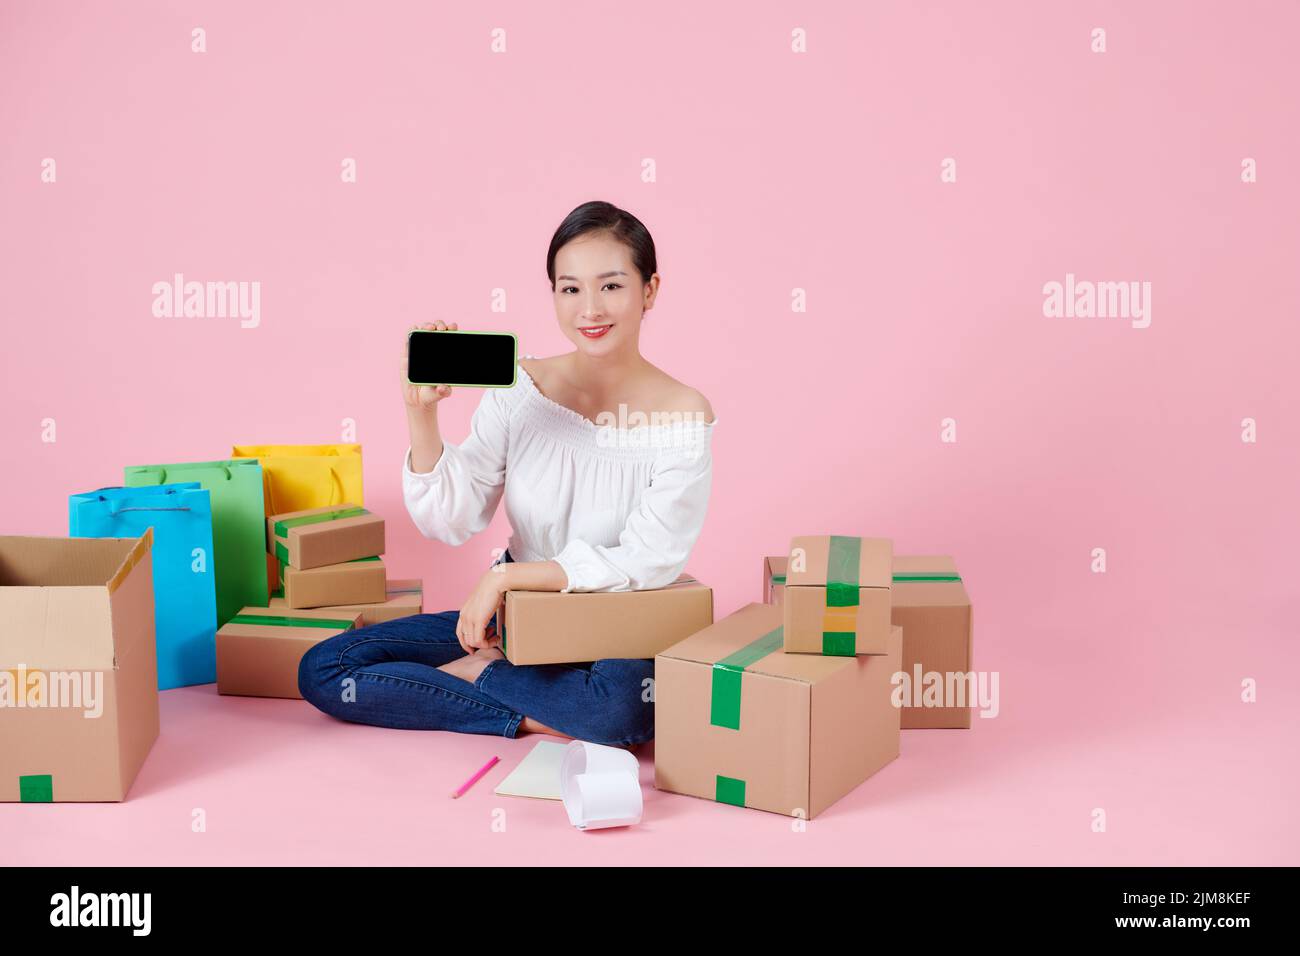 Mujer feliz mostrando smartphone con pantalla en blanco negro, sentado entre cajas después de moverse, la publicidad de la agencia inmobiliaria Foto de stock